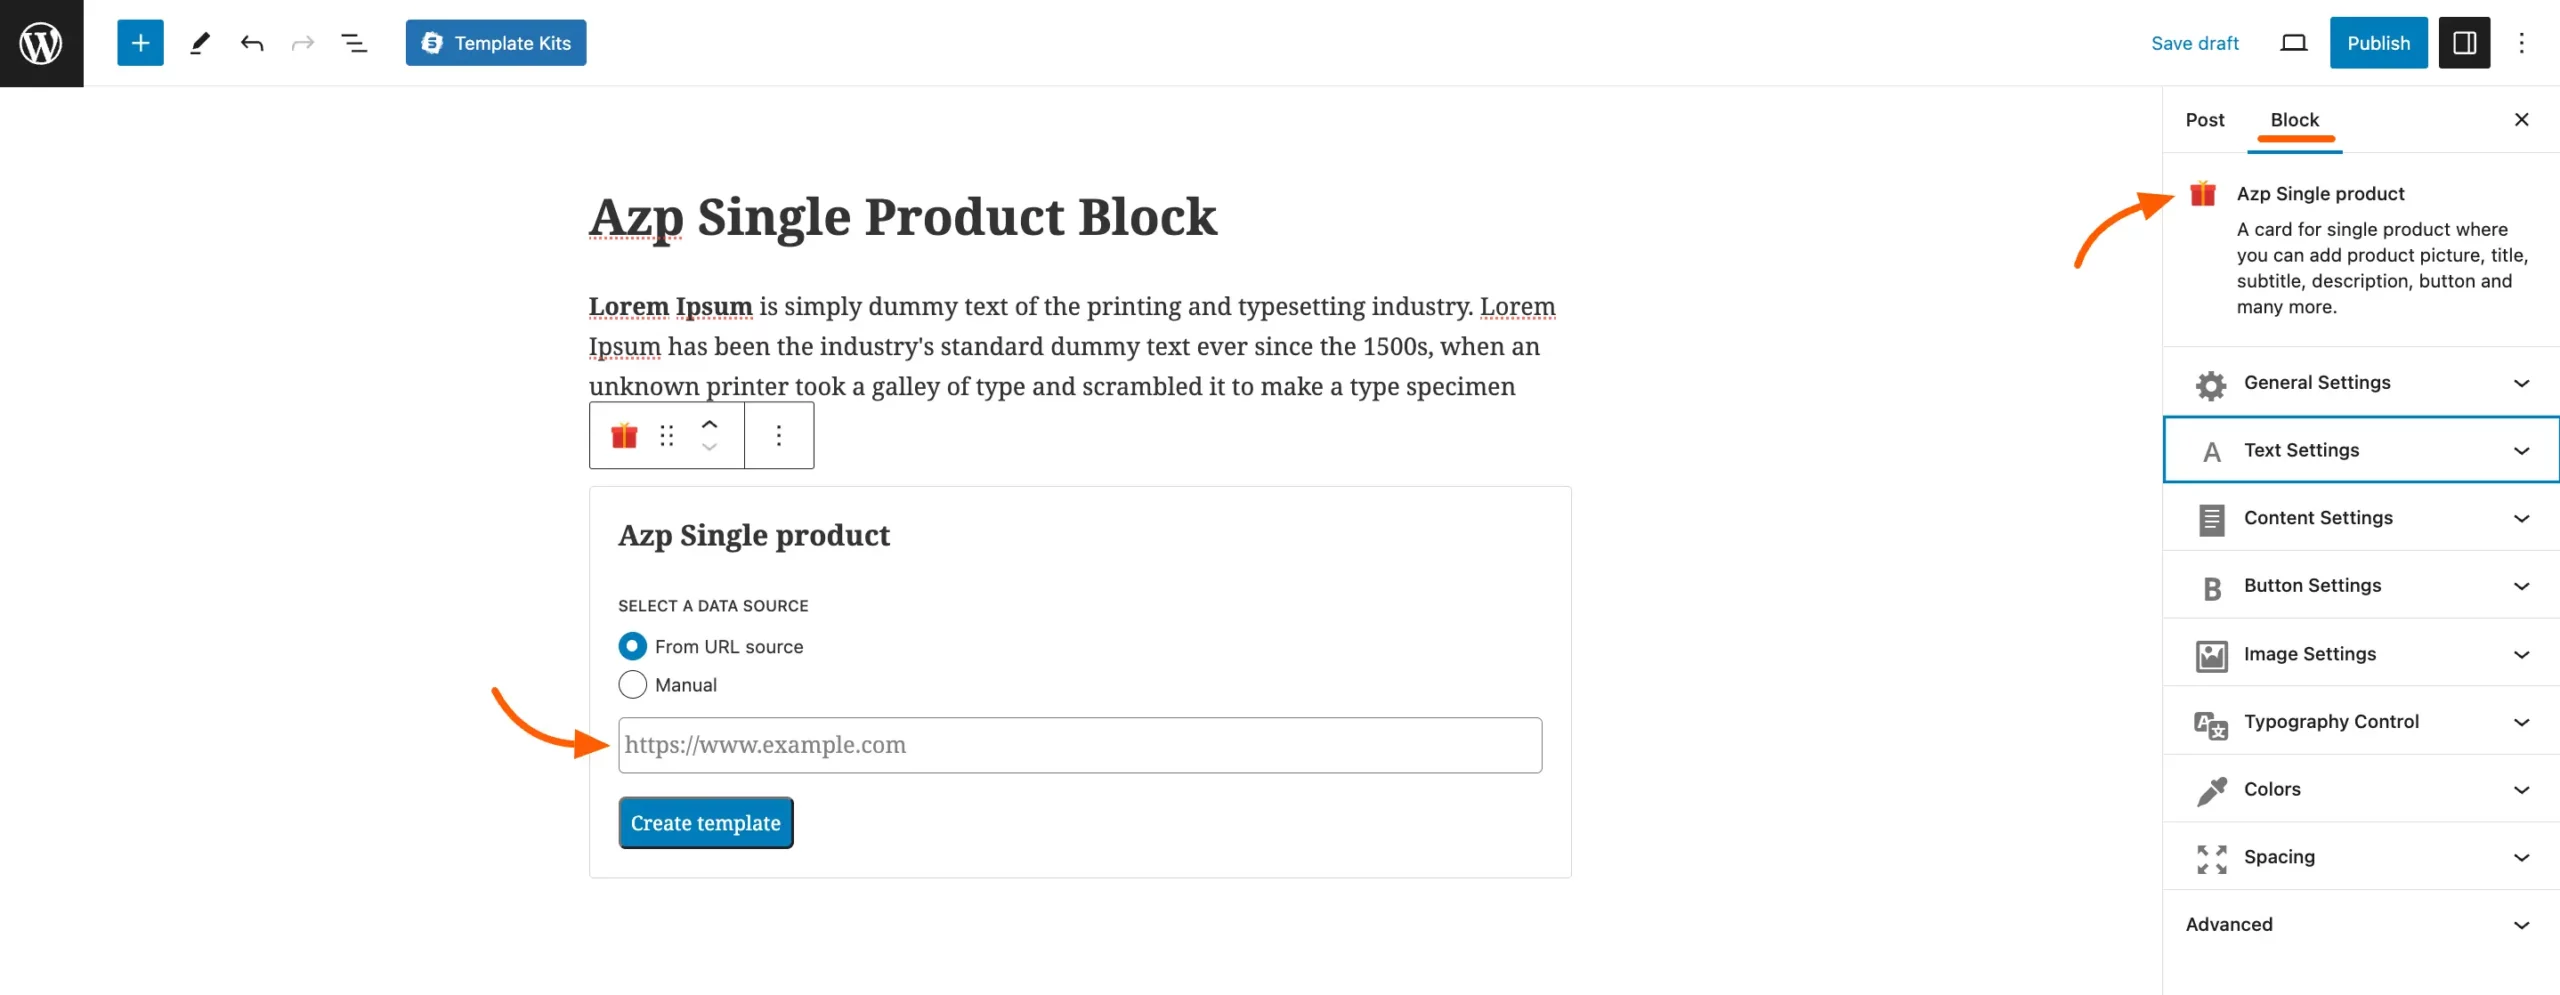 Azp-single-product-block